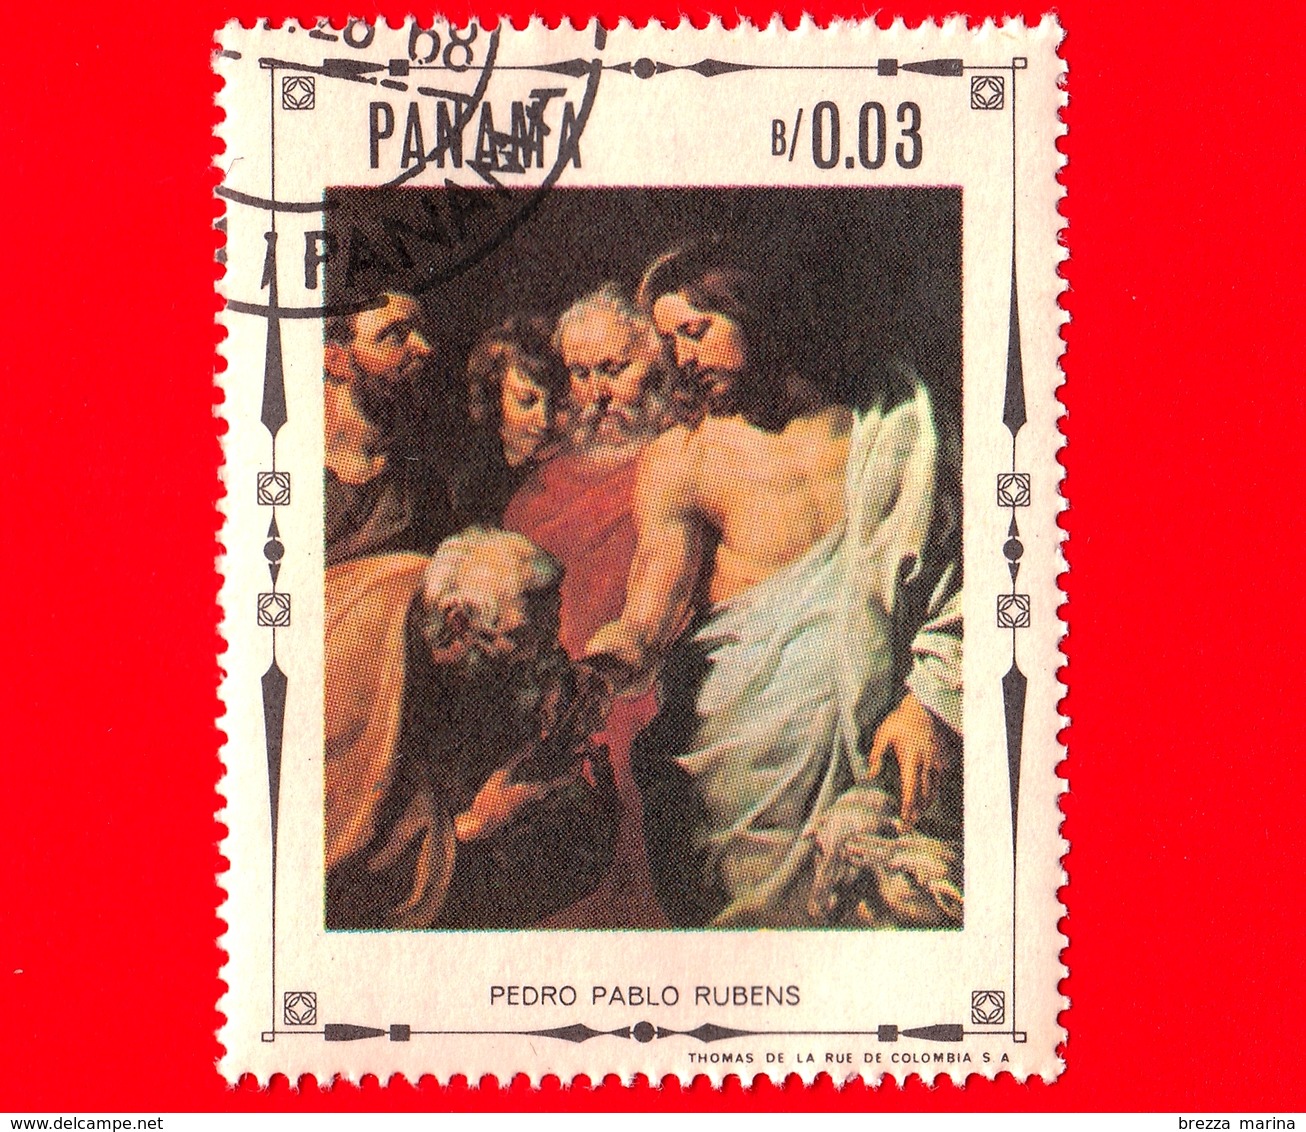 PANAMA - Nuovo - 1968 - Vita Di Cristo - Cristo Consegna Le Chiavi A Pietro, Dipinto Di Peter Paul Rubens - 0.03 - Panama